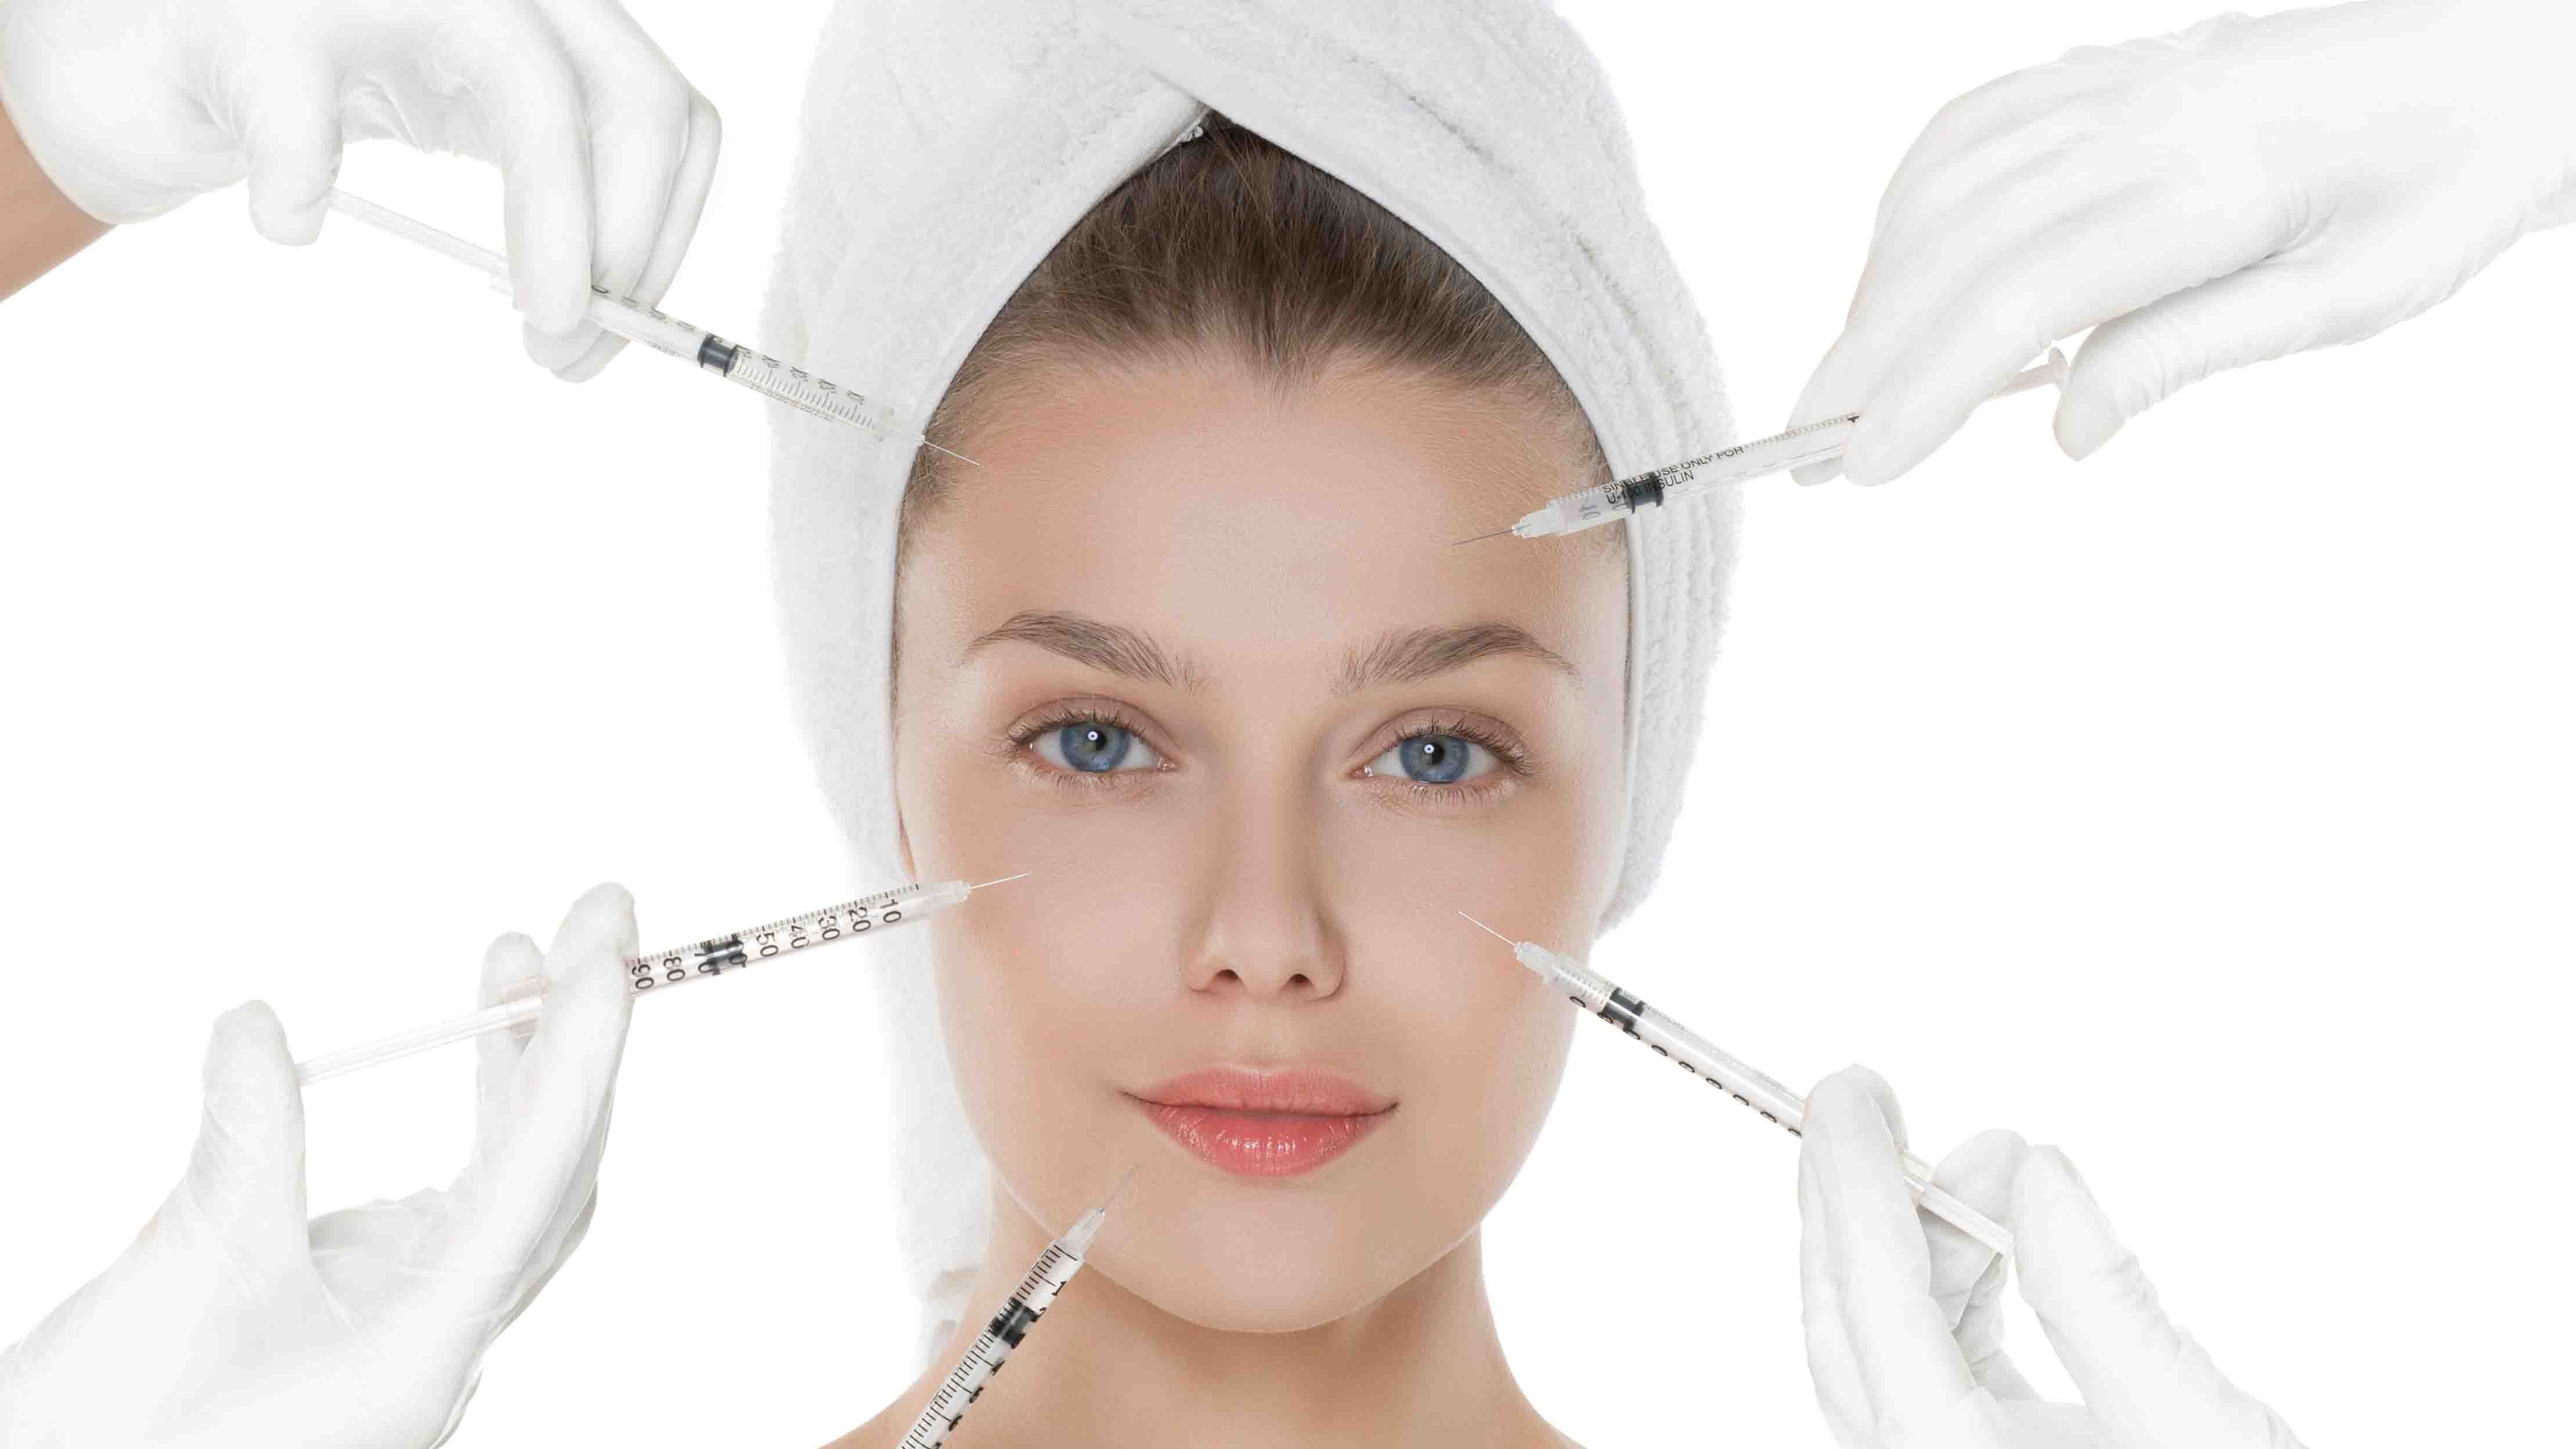 La neurotoxina es utilizada como tratamiento de algunas enfermedades neurológicas y como producto cosmético para eliminar arrugas faciales